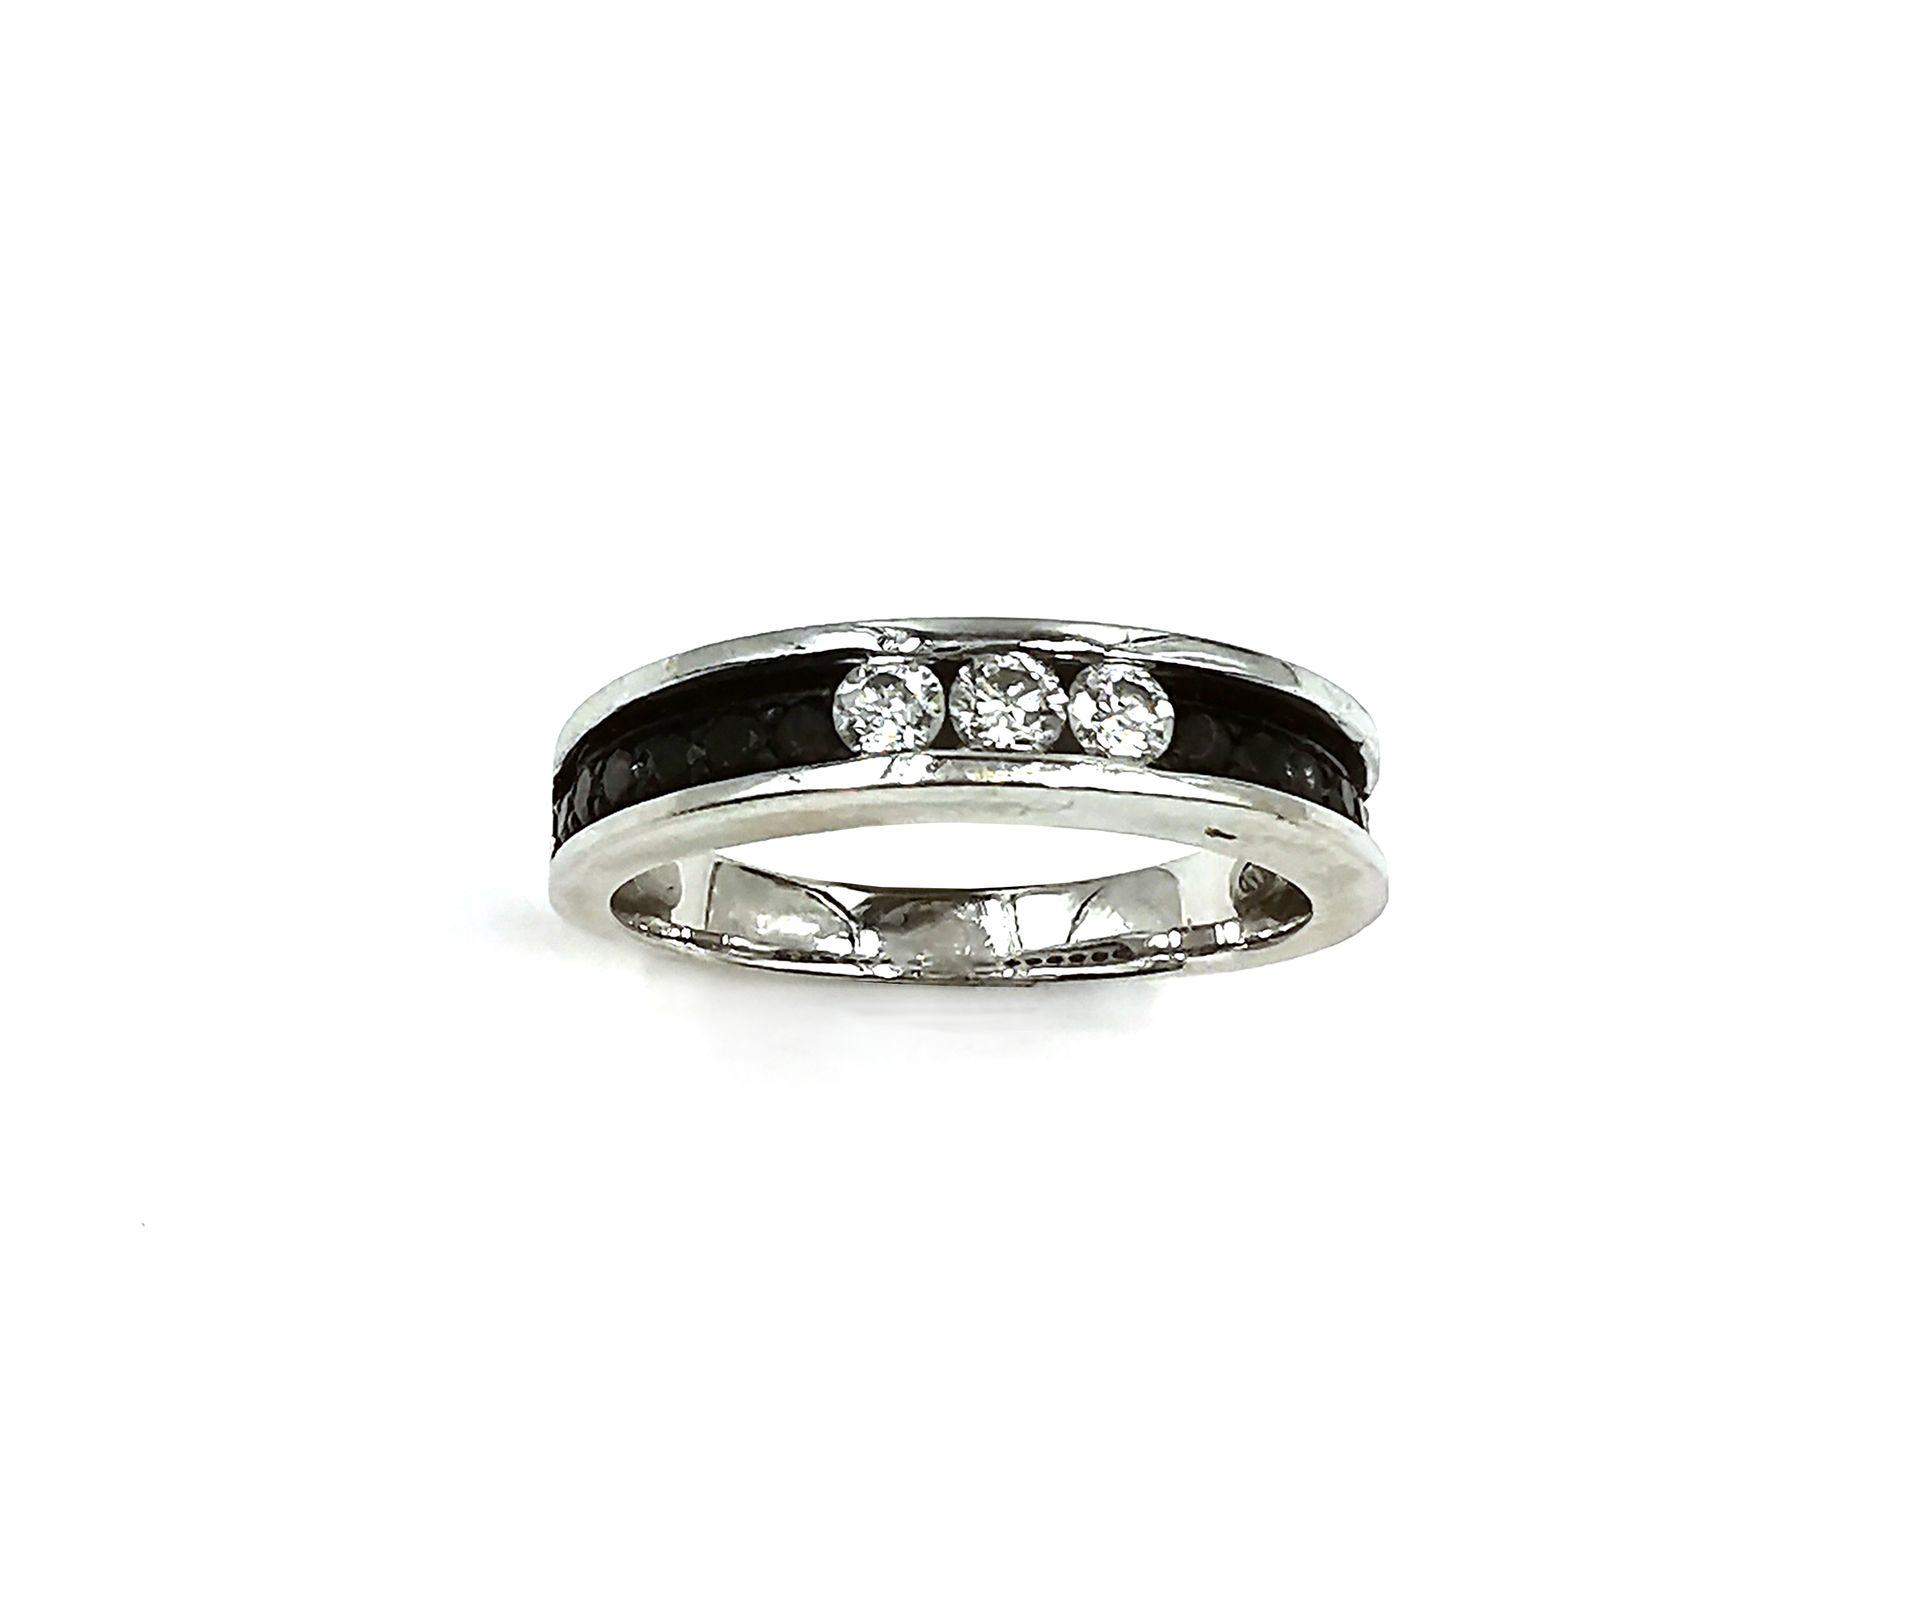 Null 18K（750千分之一）白金半婚戒，镶嵌三颗圆形明亮式切割钻石和一排黑钻，采用种子镶嵌法

手指大小 : 51

毛重：3.8克。